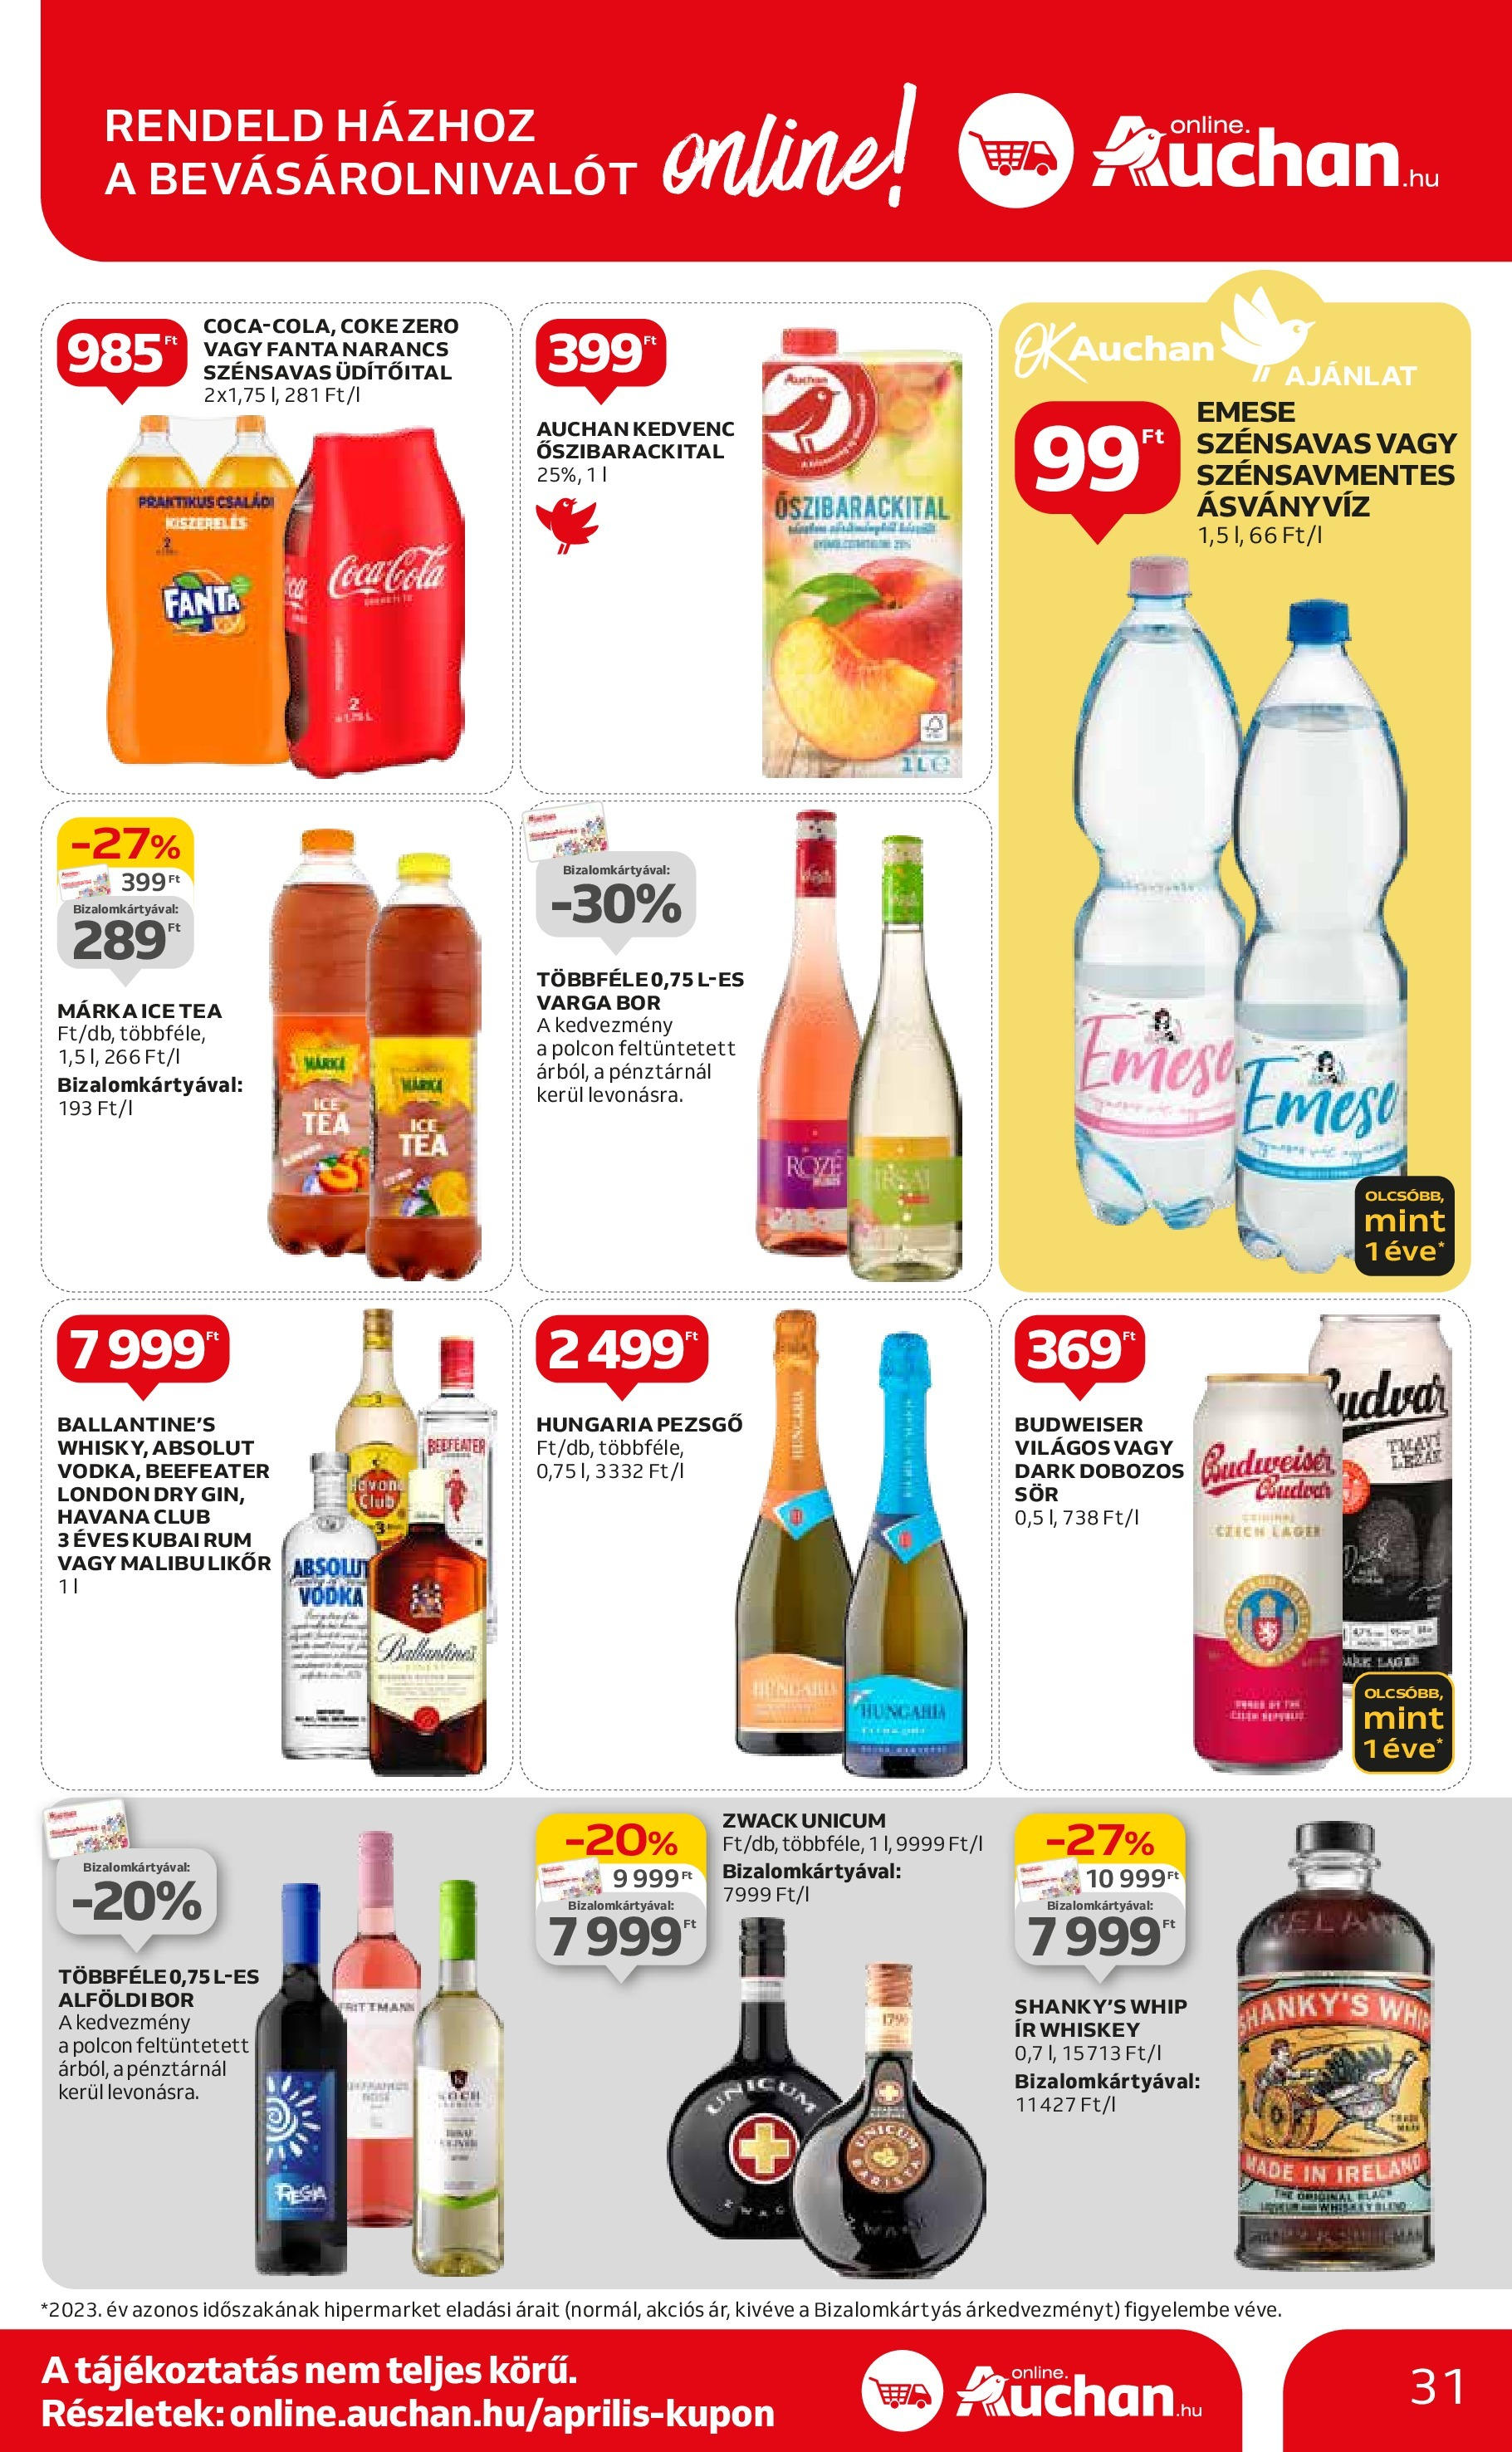 Auchan  Akciós újság - 2024.04.25. -tól/töl > akció, szórólap 🛍️ | Oldal: 31 | Termékek: Ice tea, Pezsgő, Narancs, Vodka